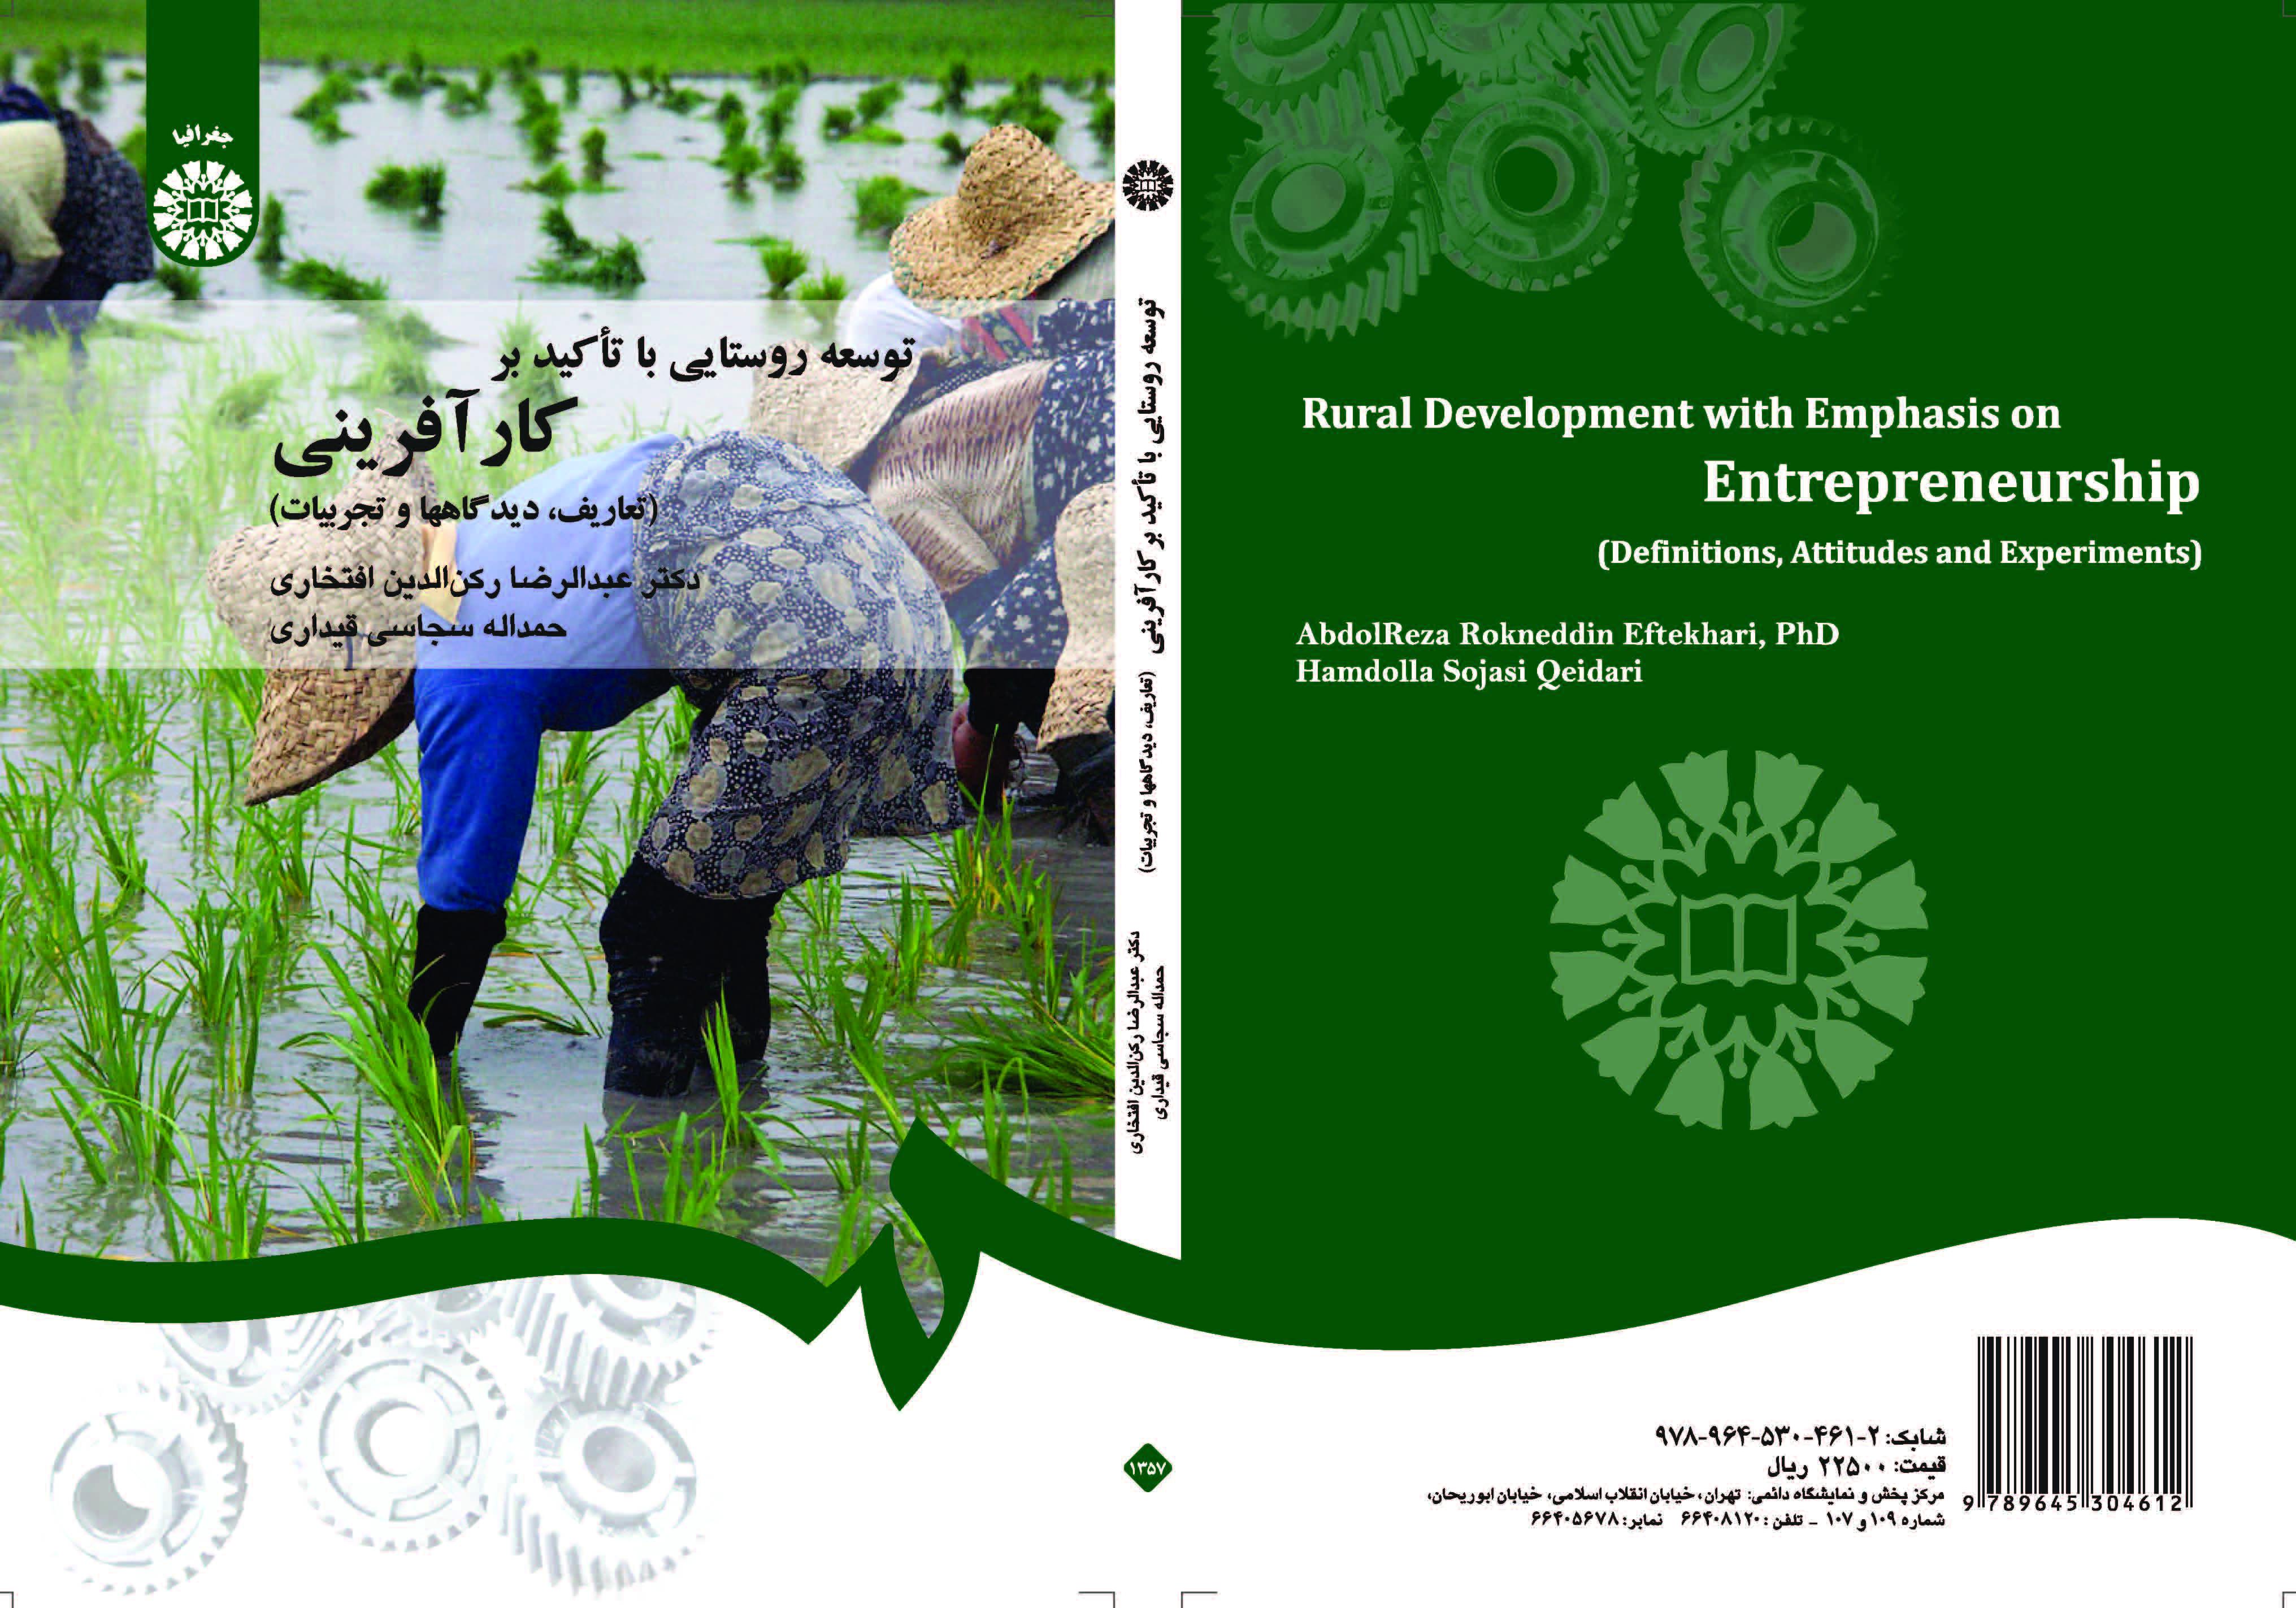 التنمية الريفية بالتركيز على ريادة الأعمال (التعاريف، ووجهات النظر، والتجارب)